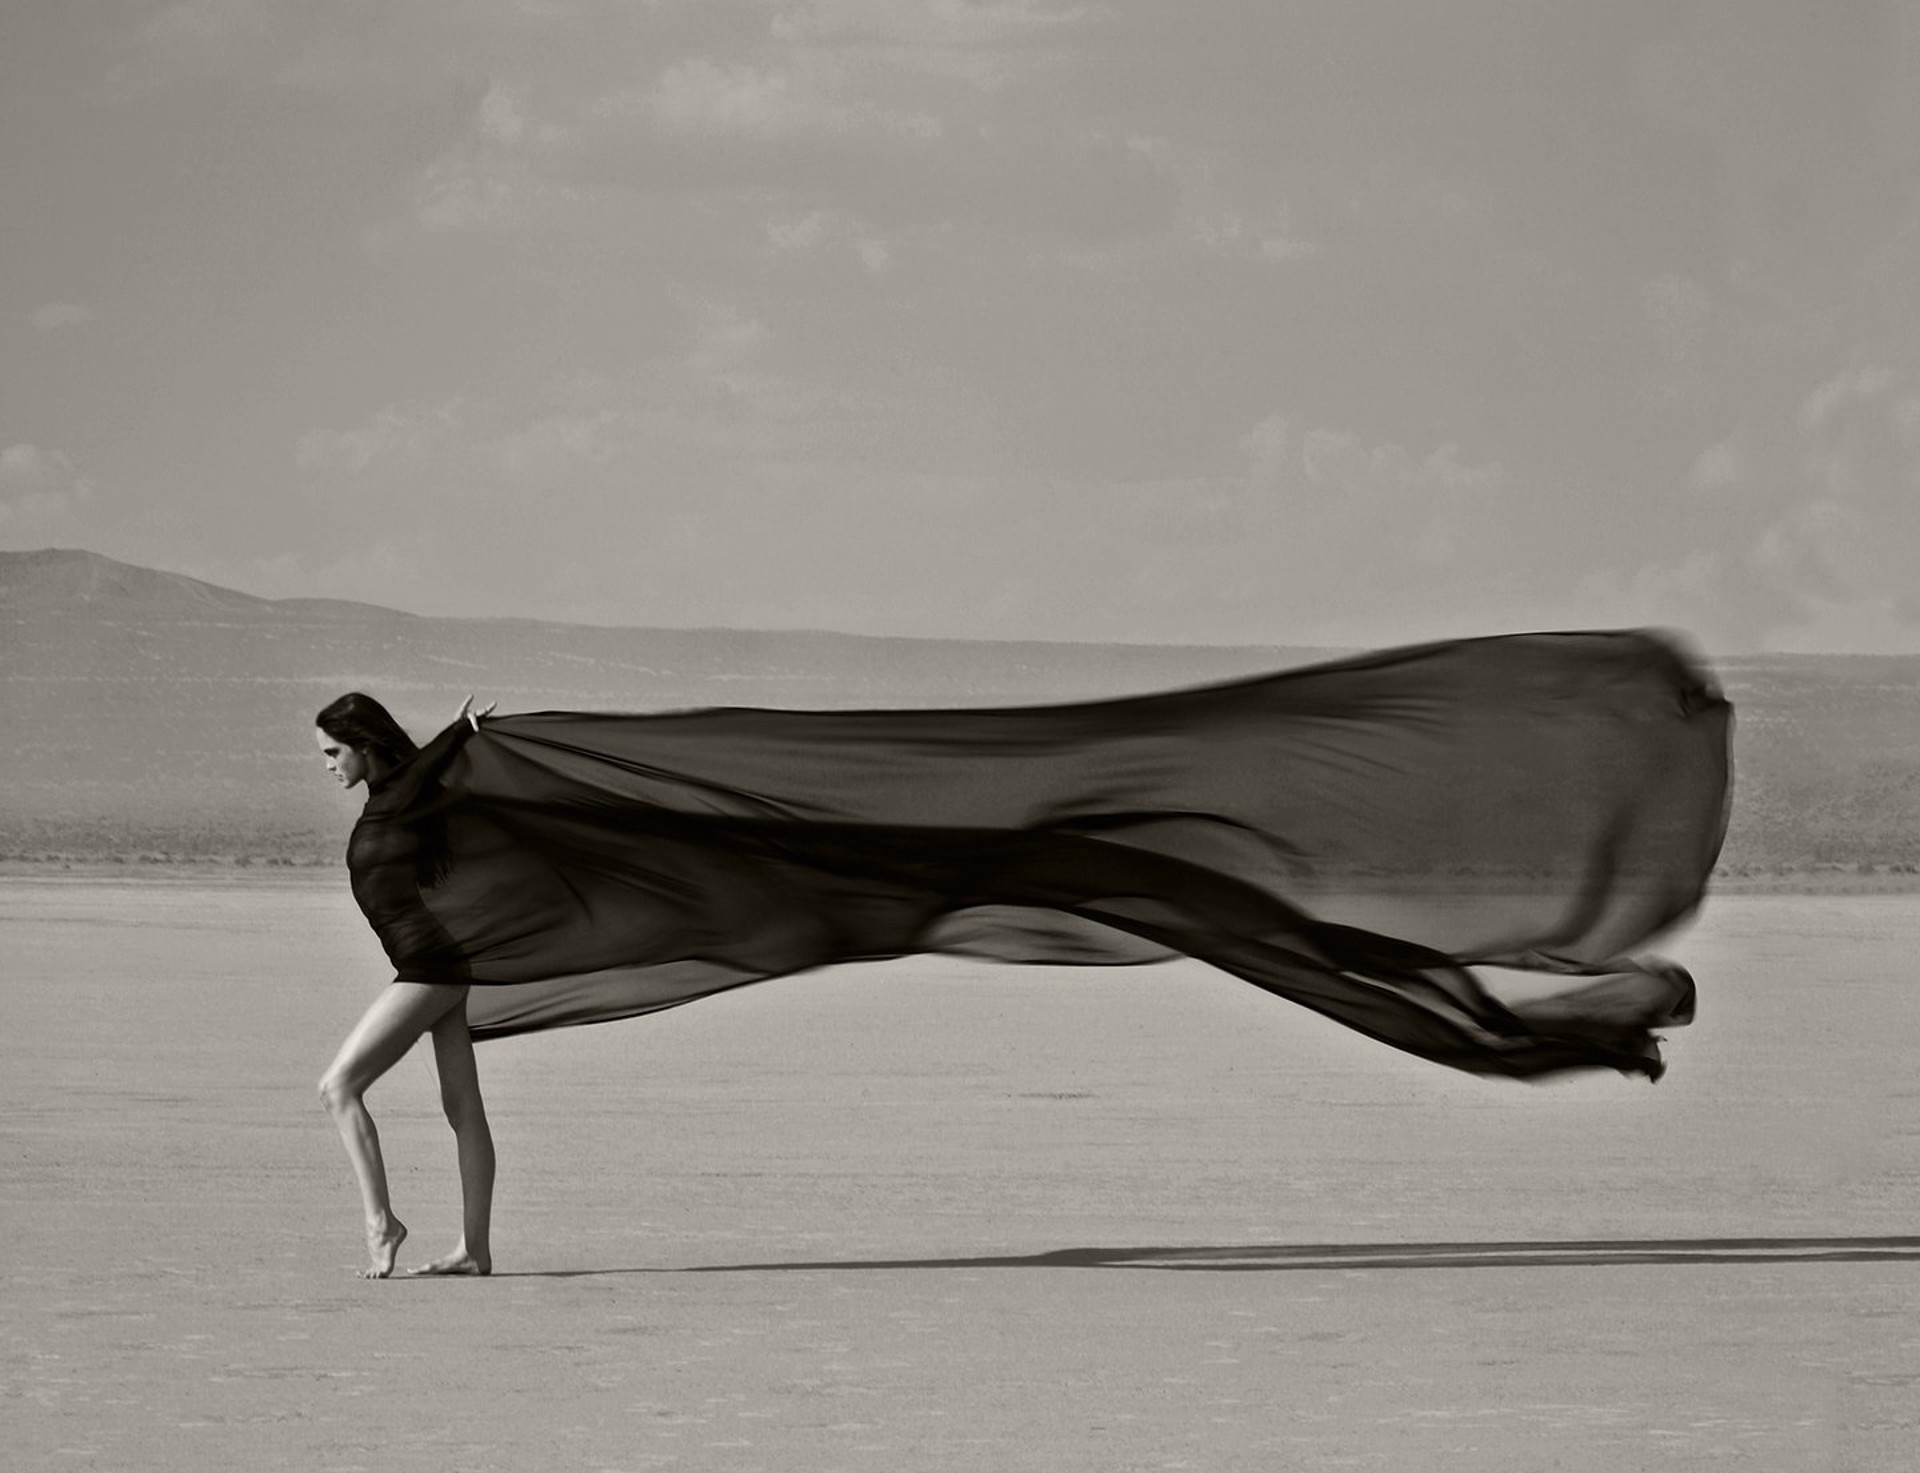 Vanity Wind by Renée Jacobs